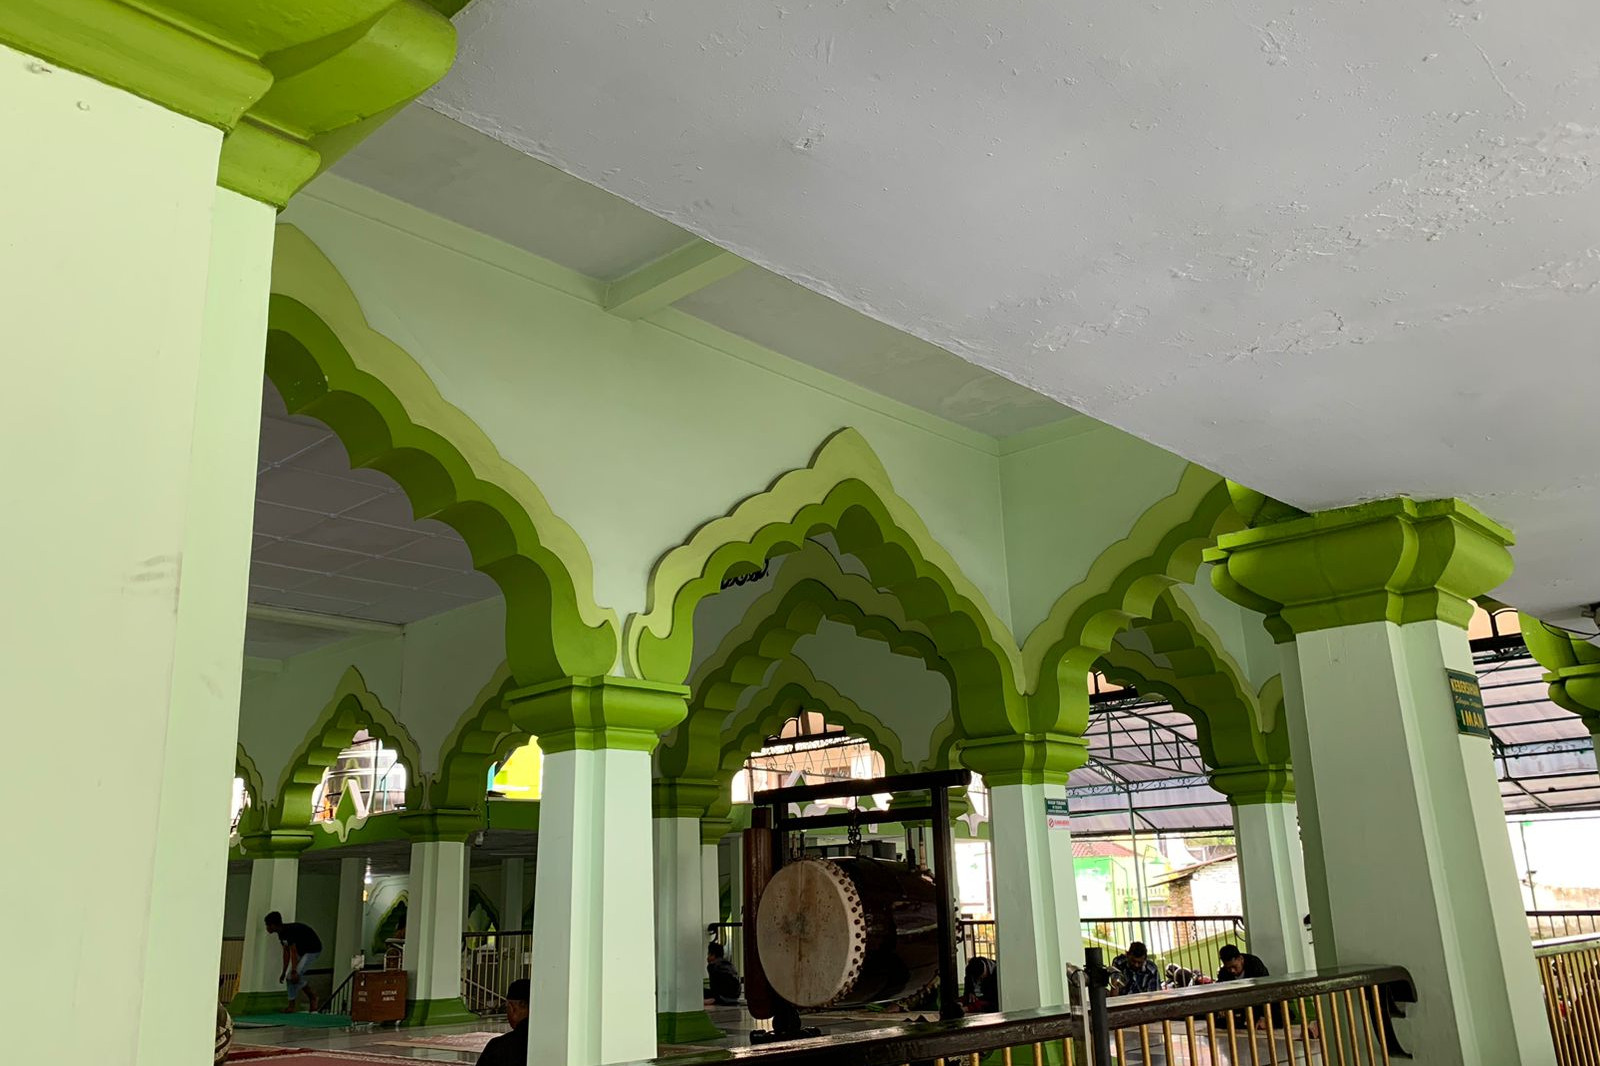 Masjid Agung Magelang, bekas langgar yang jadi saksi perjuangan kemerdekaan Indonesia